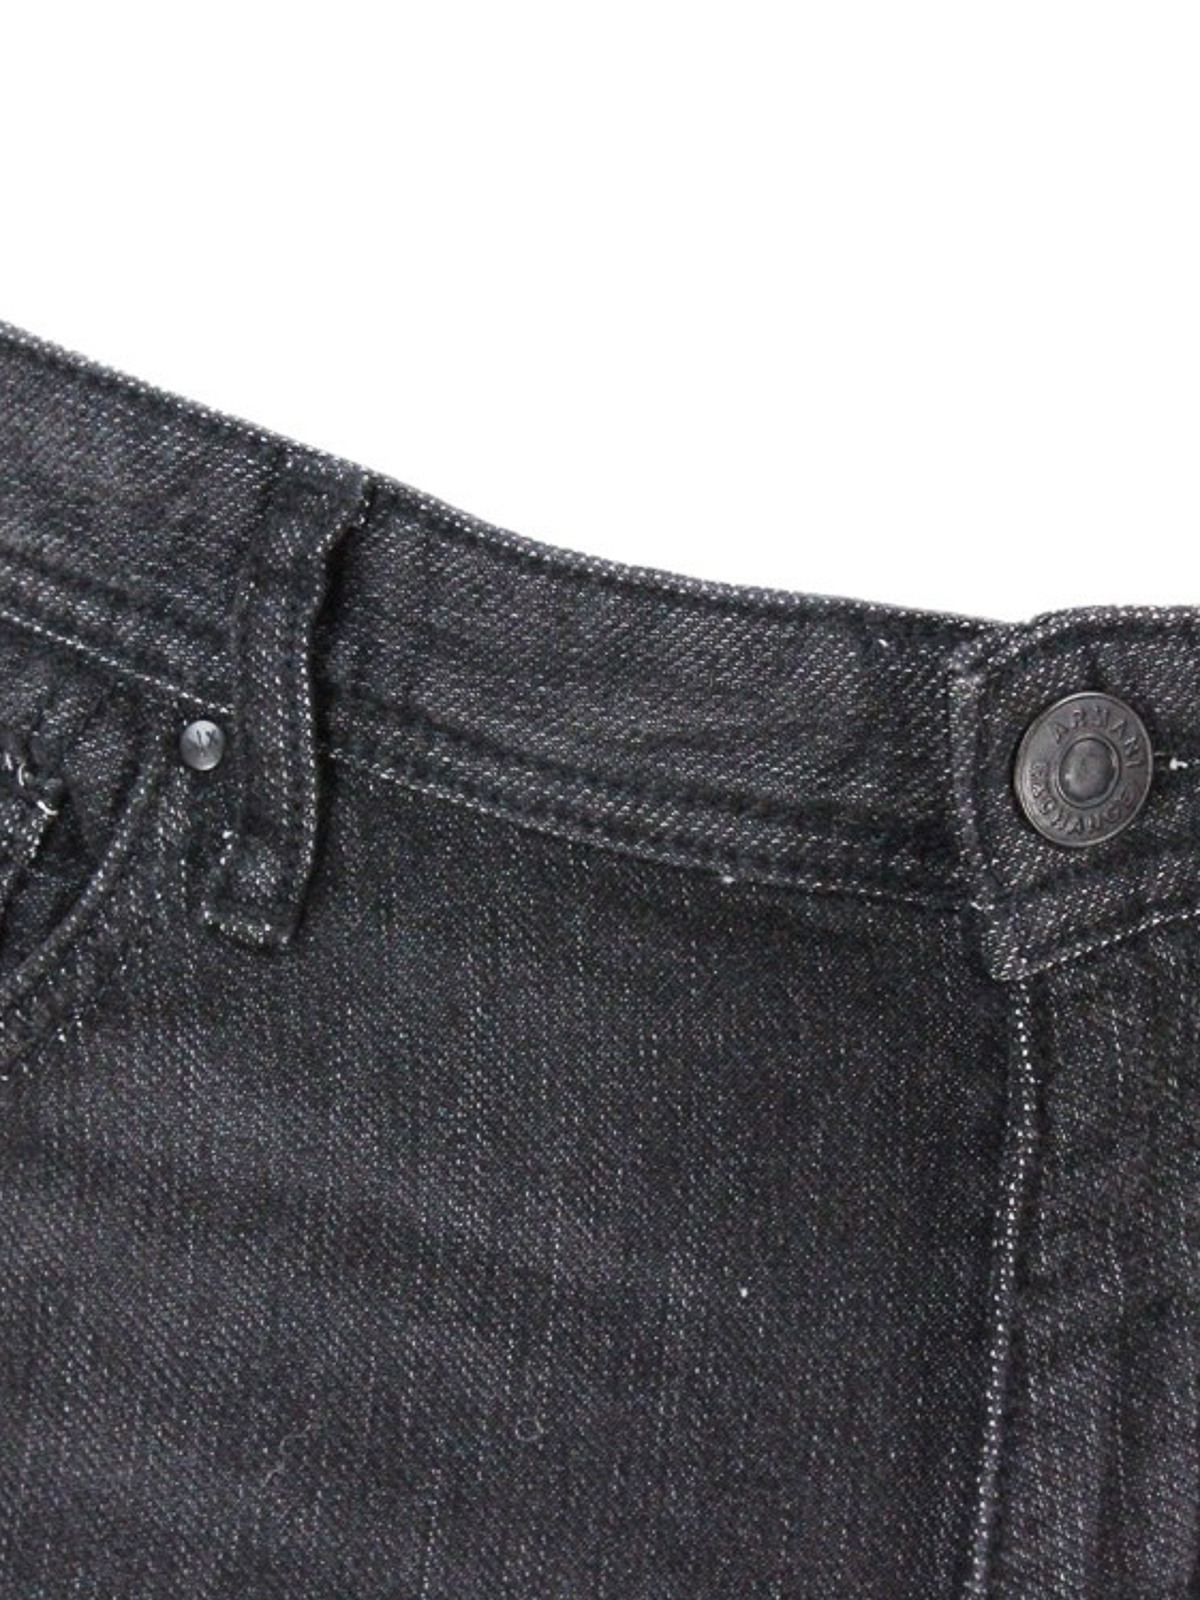 Forgænger tilbagemeldinger at tiltrække Skinny jeans Armani Exchange - Faded skinny jeans - 6LZJ14Z5P6Z0204